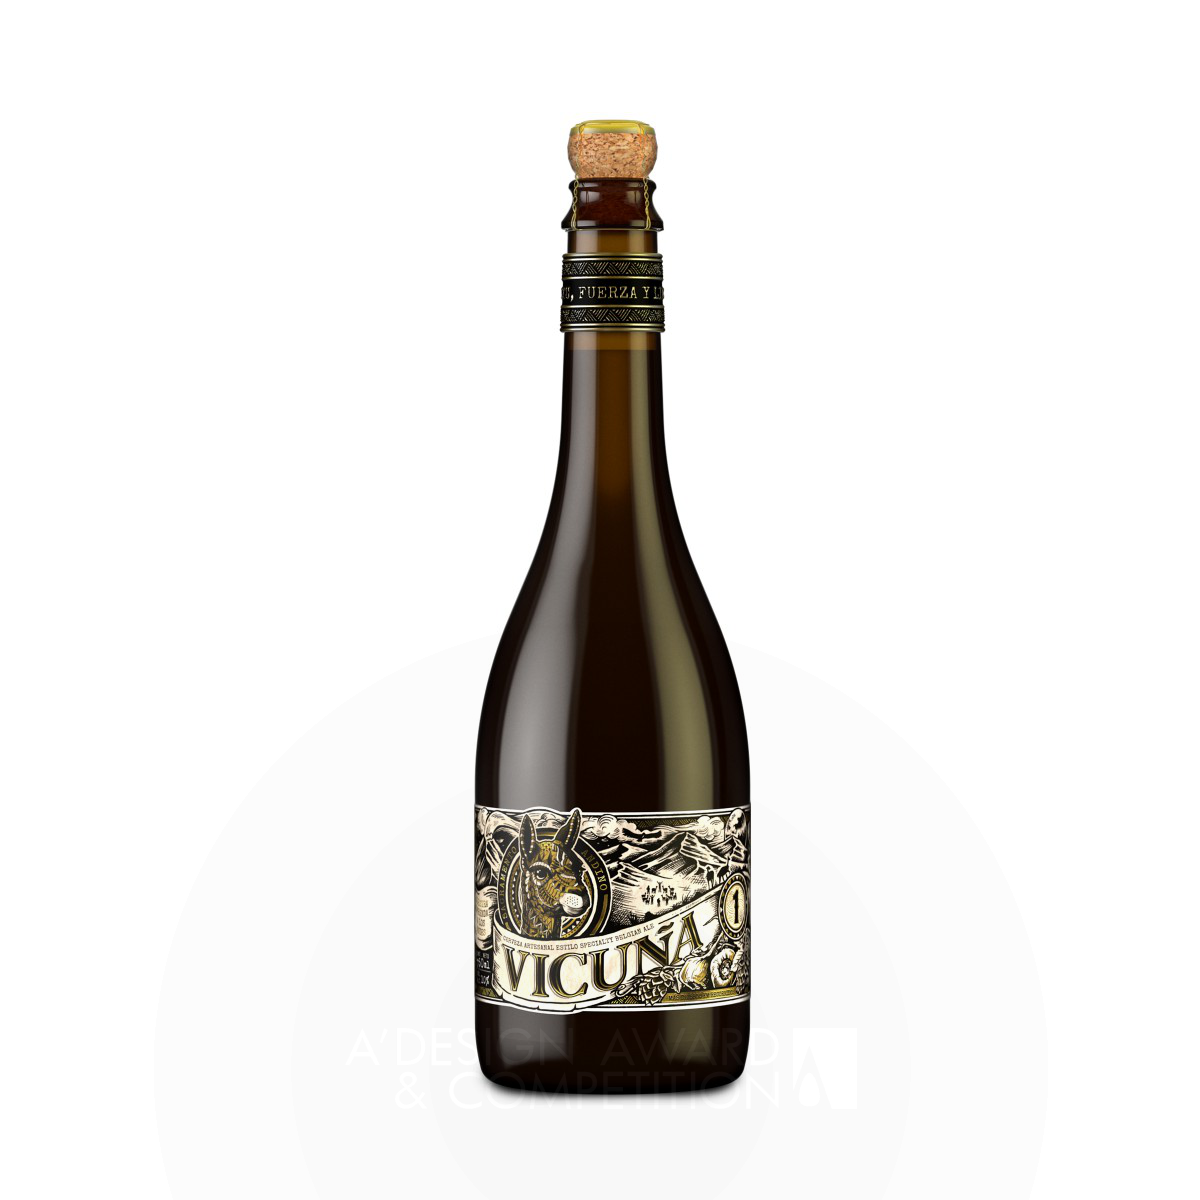 Vicuña Craft Beer Beer by Tridimage Silver Packaging Design Award Winner 2019 